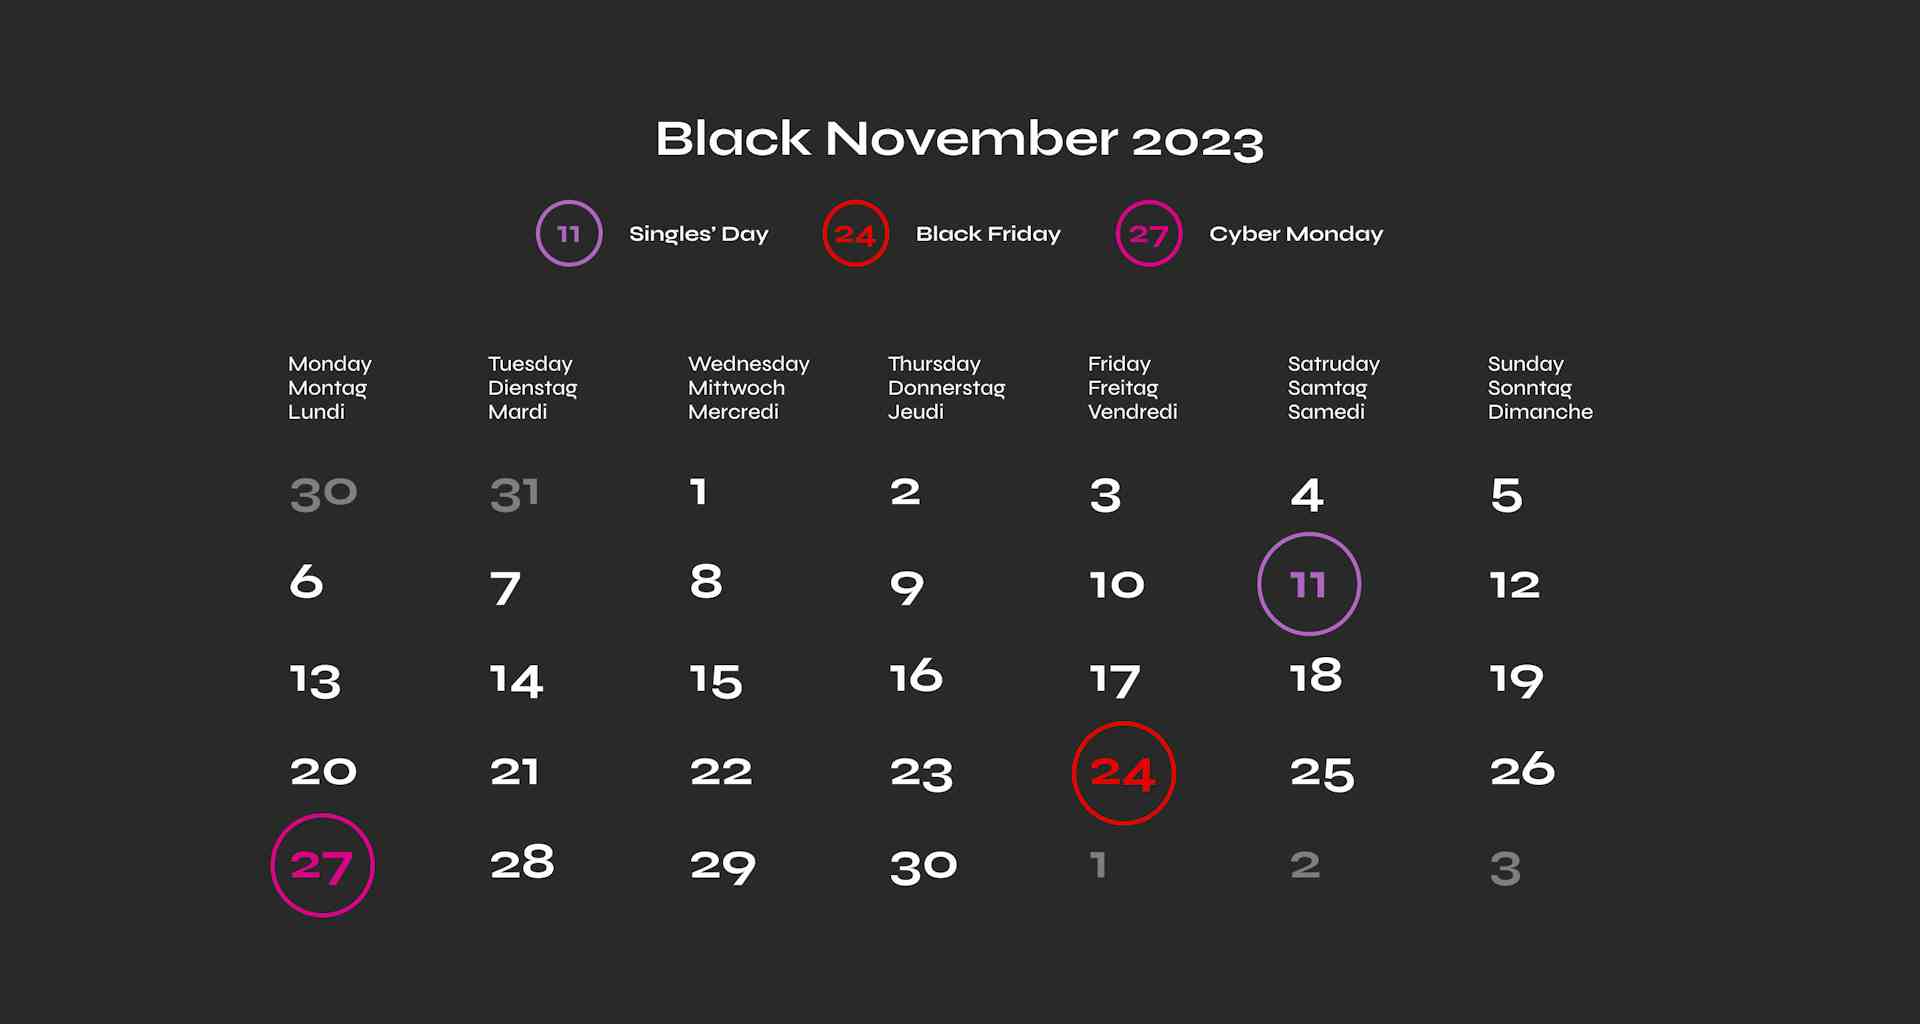 Black November 2023 in der Schweiz (Singles' Day 2023, Black Friday 2023 und Cyber Monday 2023) | blackfriday.ch